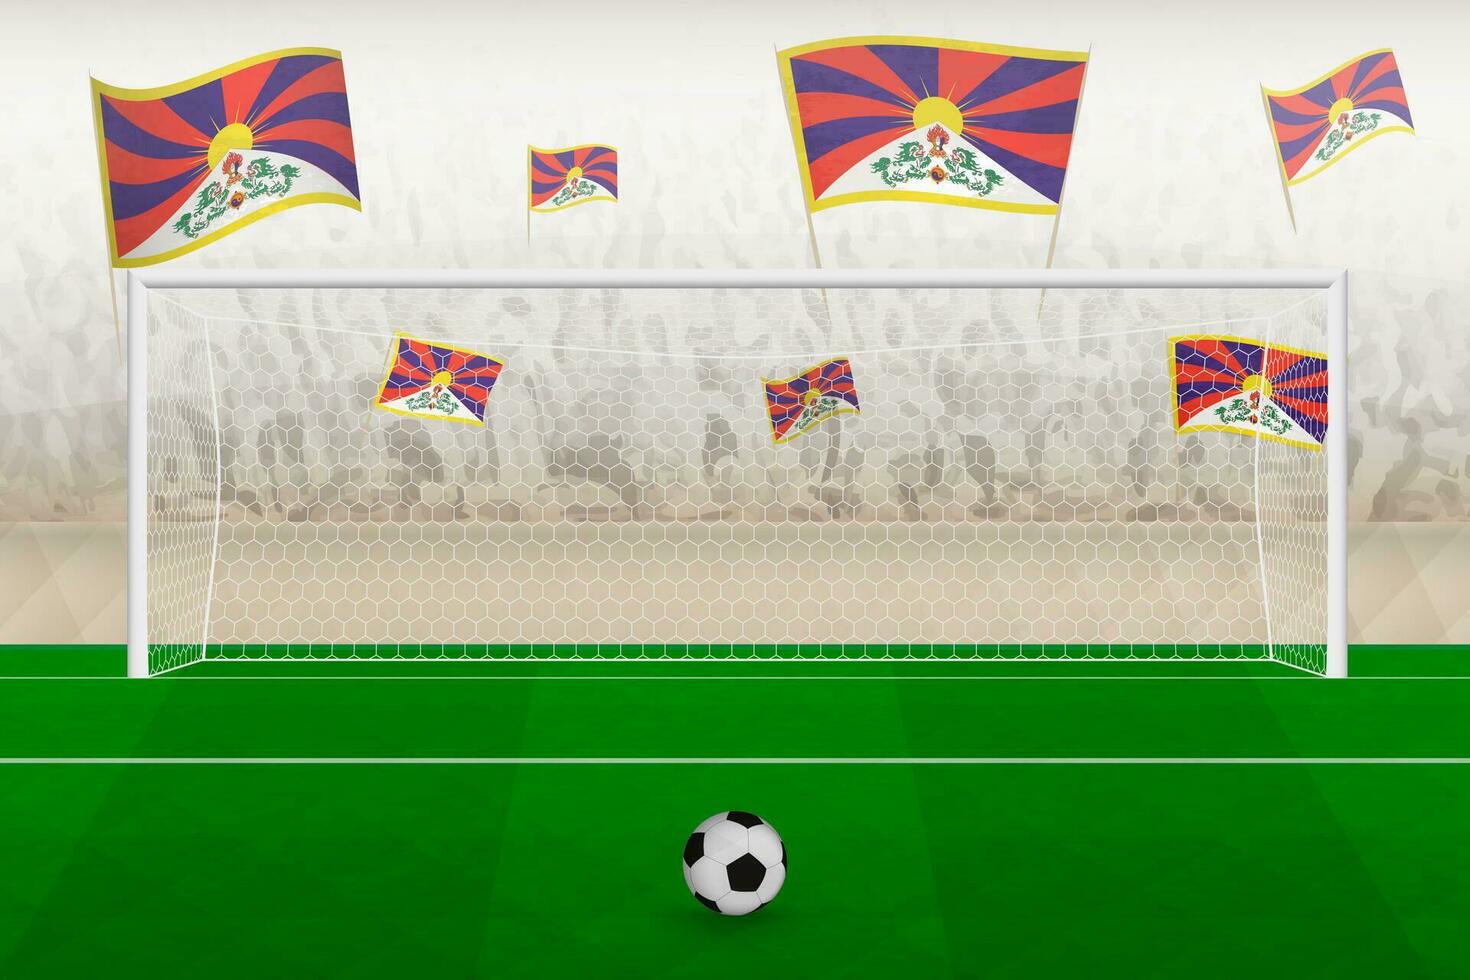 Tibet Football équipe Ventilateurs avec drapeaux de Tibet applaudissement sur stade, peine donner un coup concept dans une football correspondre. vecteur